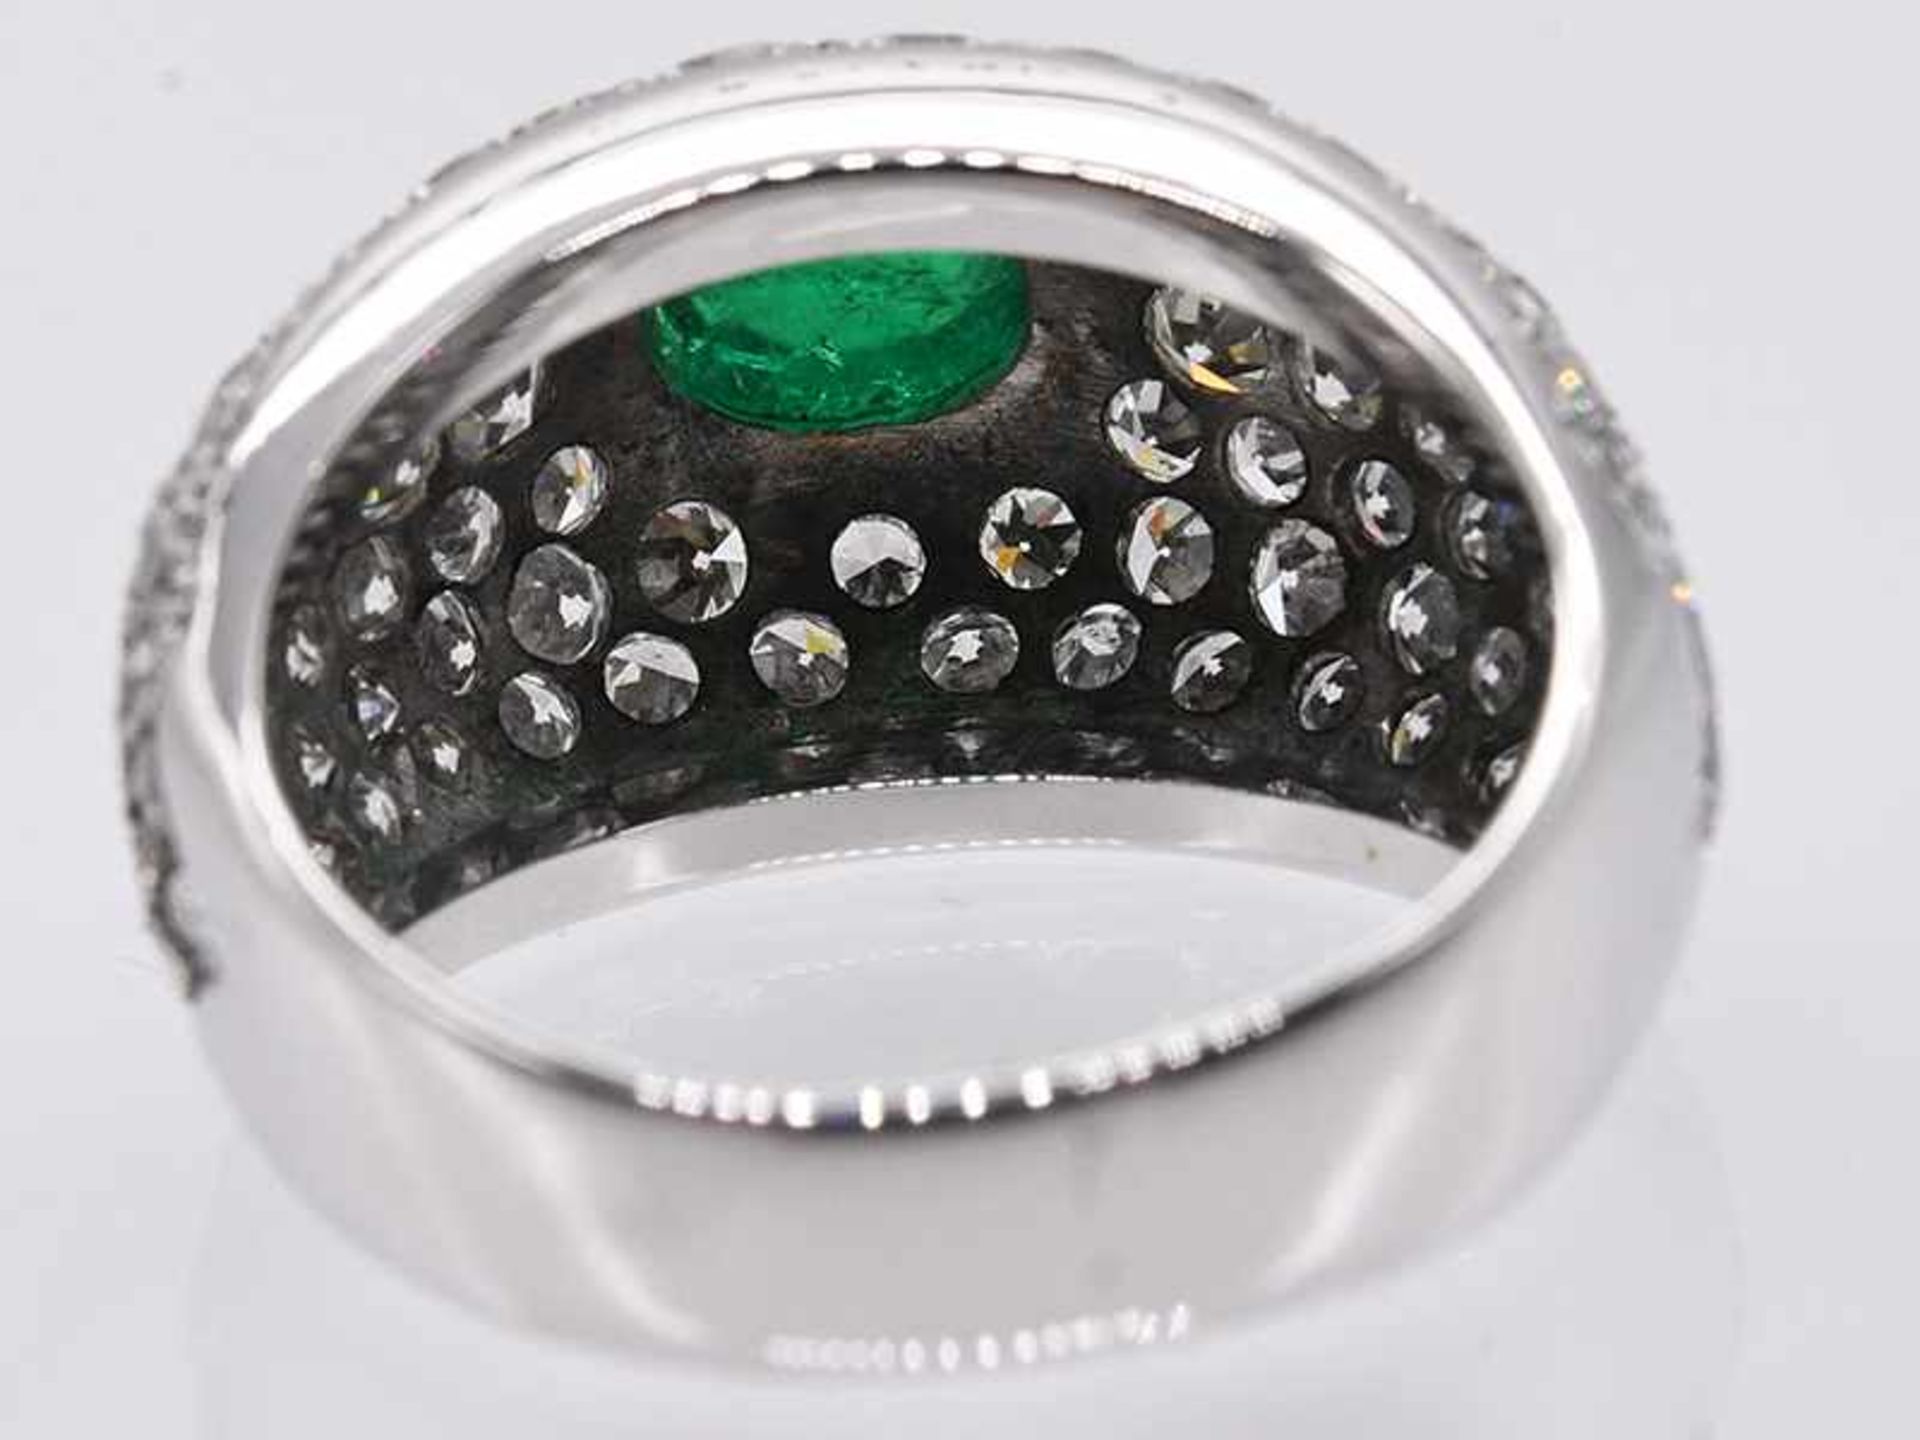 Bandring mit Smaragd-Cabochon ca. 1,5 ct und Achtkant-Diamanten, zusammen ca. 2 ct, 80-er Jahre. - Bild 3 aus 8